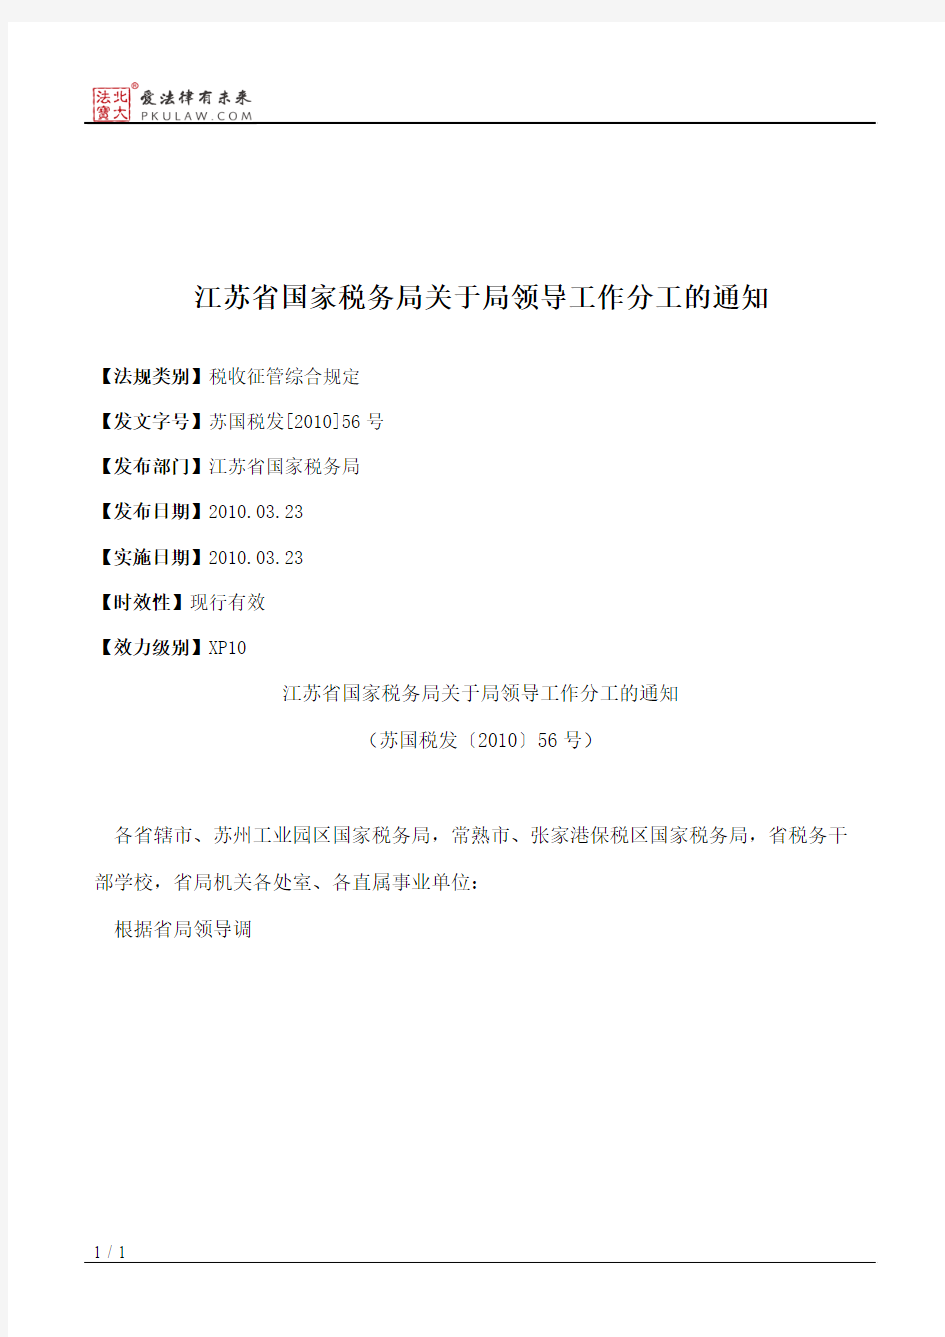 江苏省国家税务局关于局领导工作分工的通知